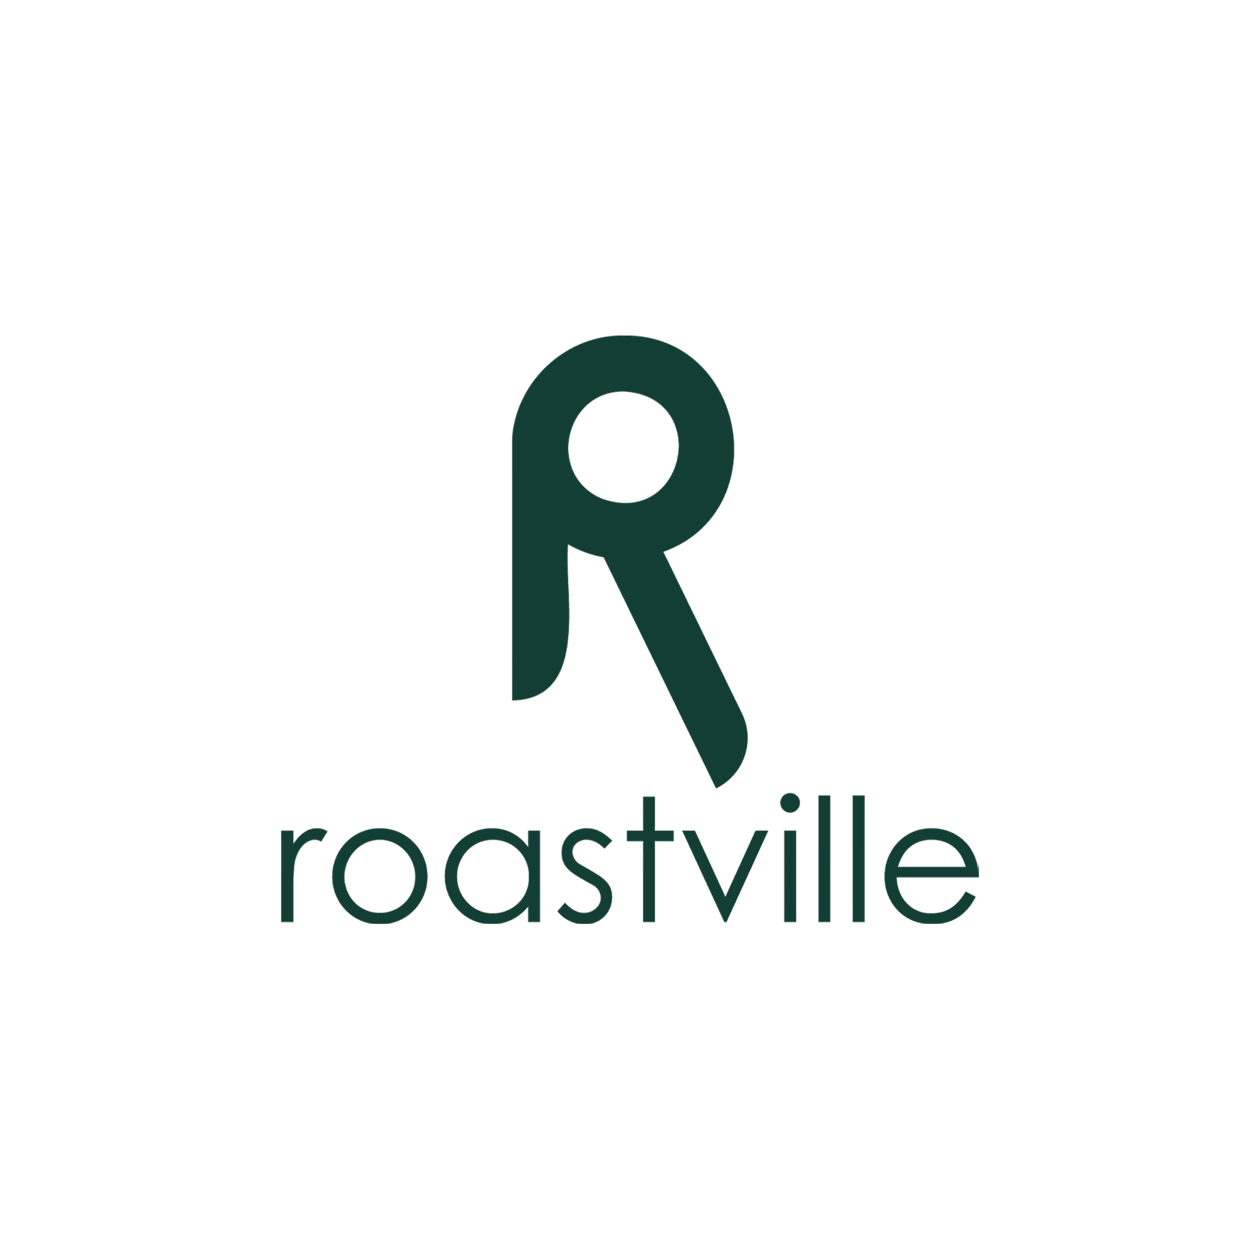 Roastville